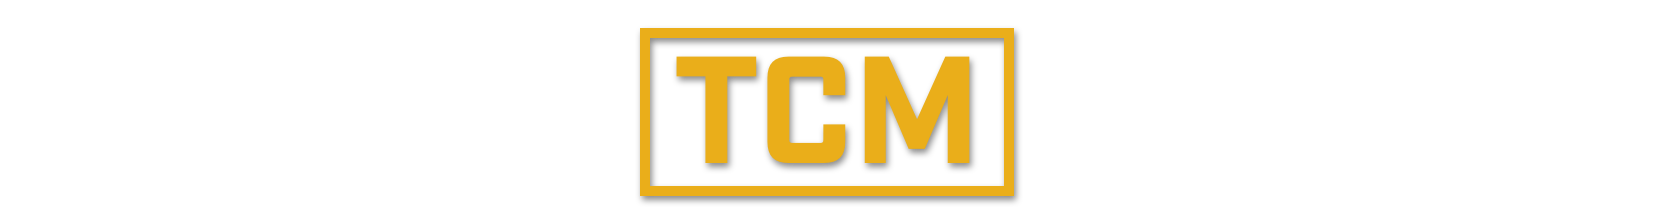 tcm-title